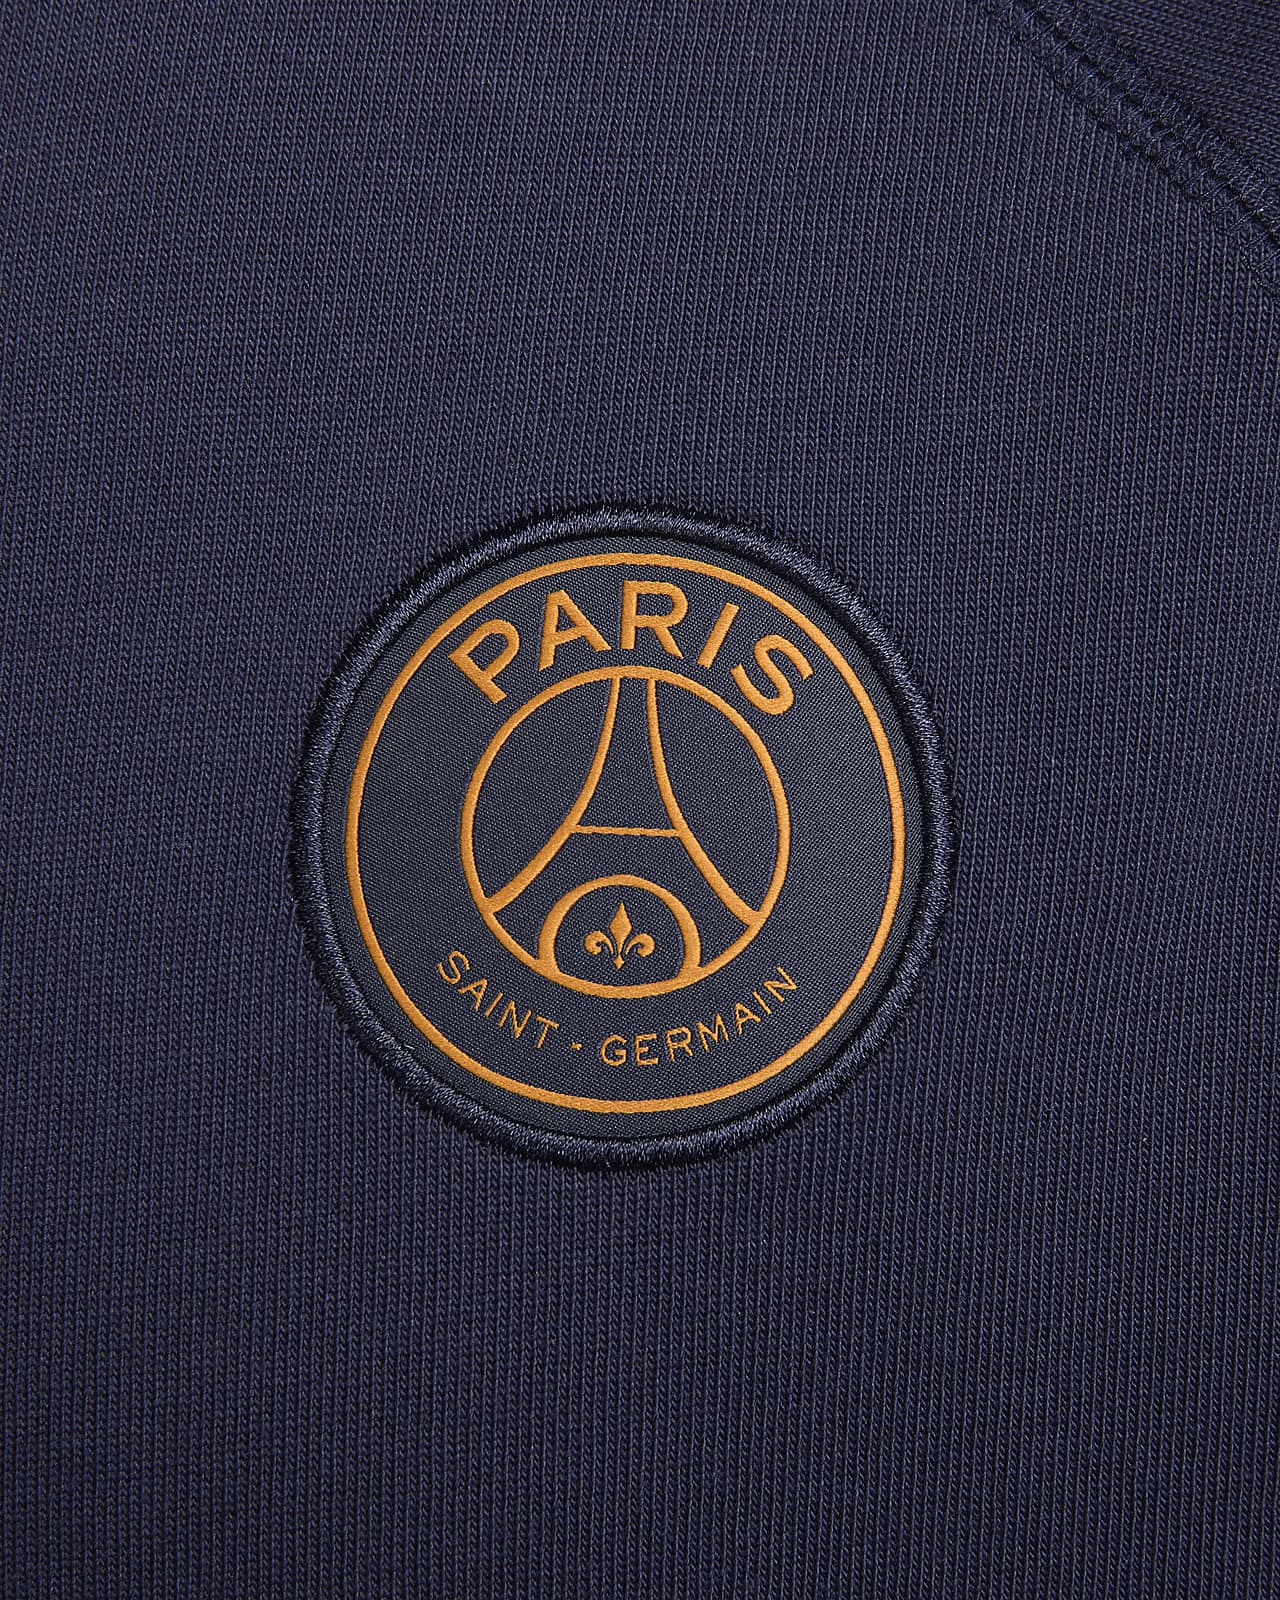 Serviette Nike Paris Saint germain / PSG (50 x 100 cm)